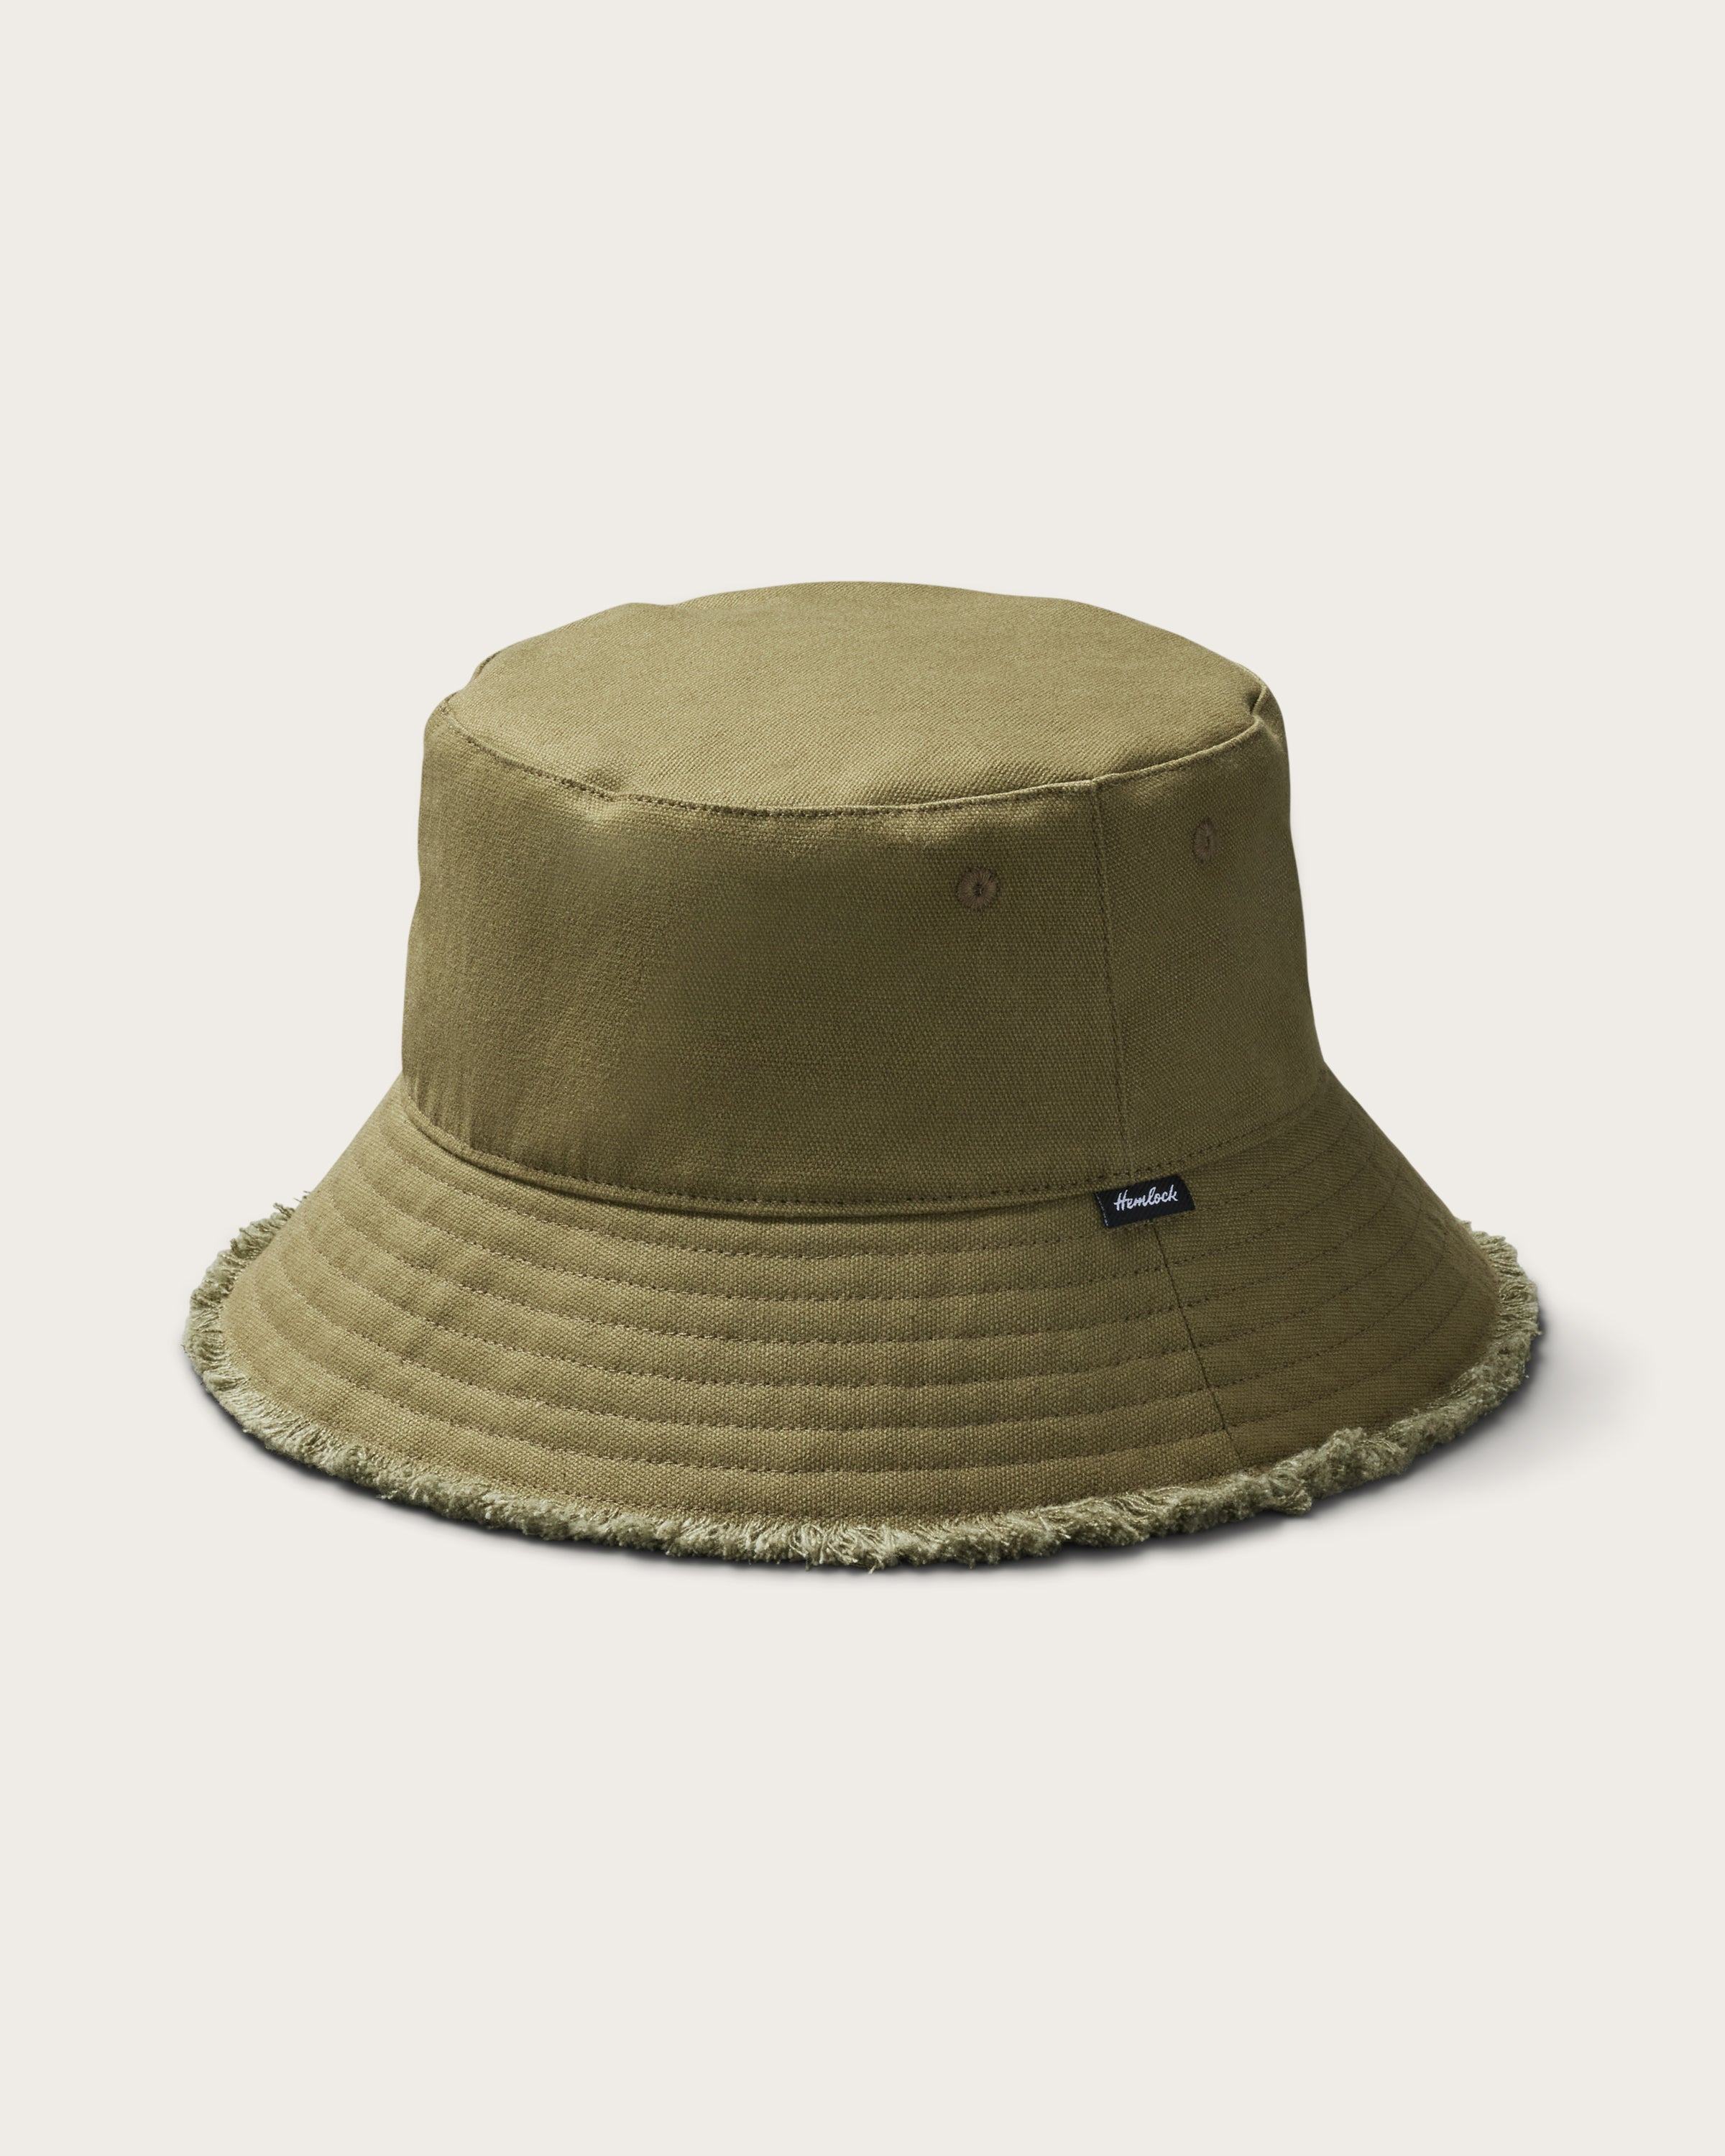 Hemlock Coronado Cotton Bucket Hat in Olive